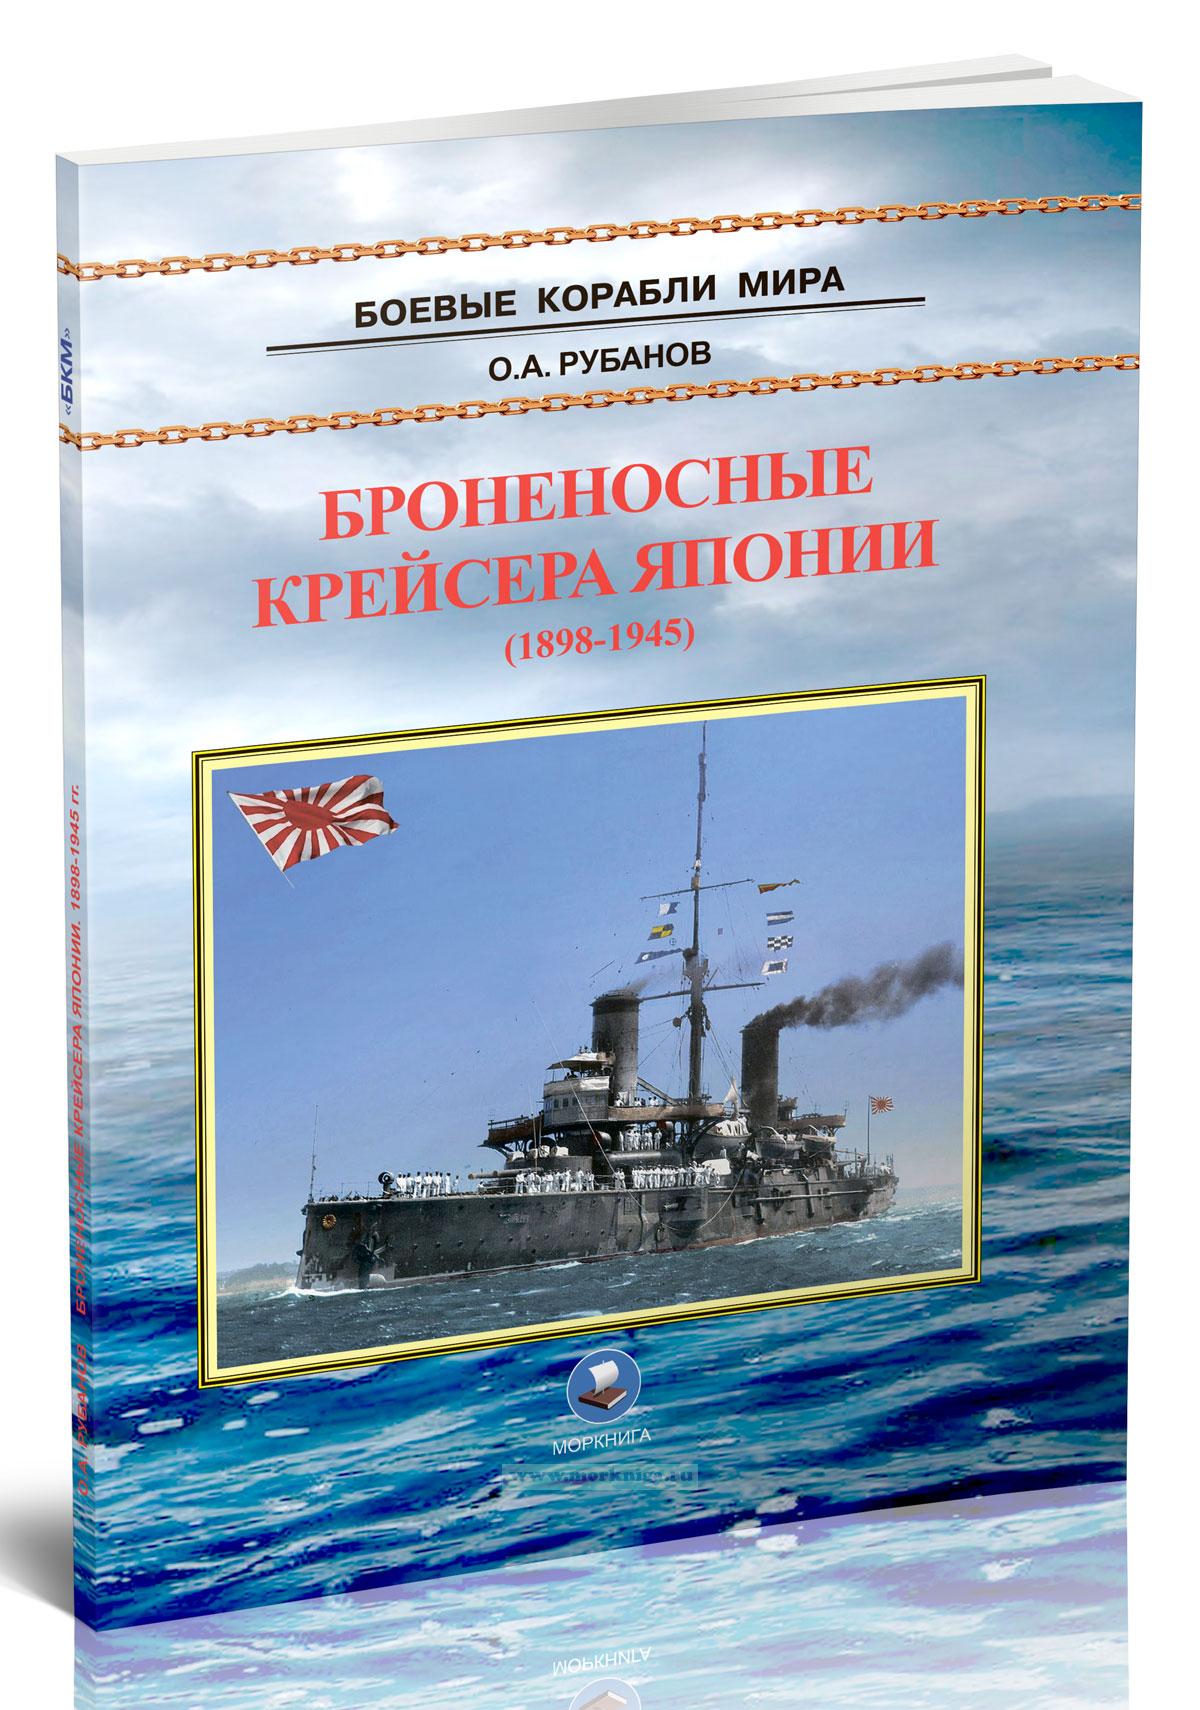 Броненосные крейсера Японии. 1898-1945 гг